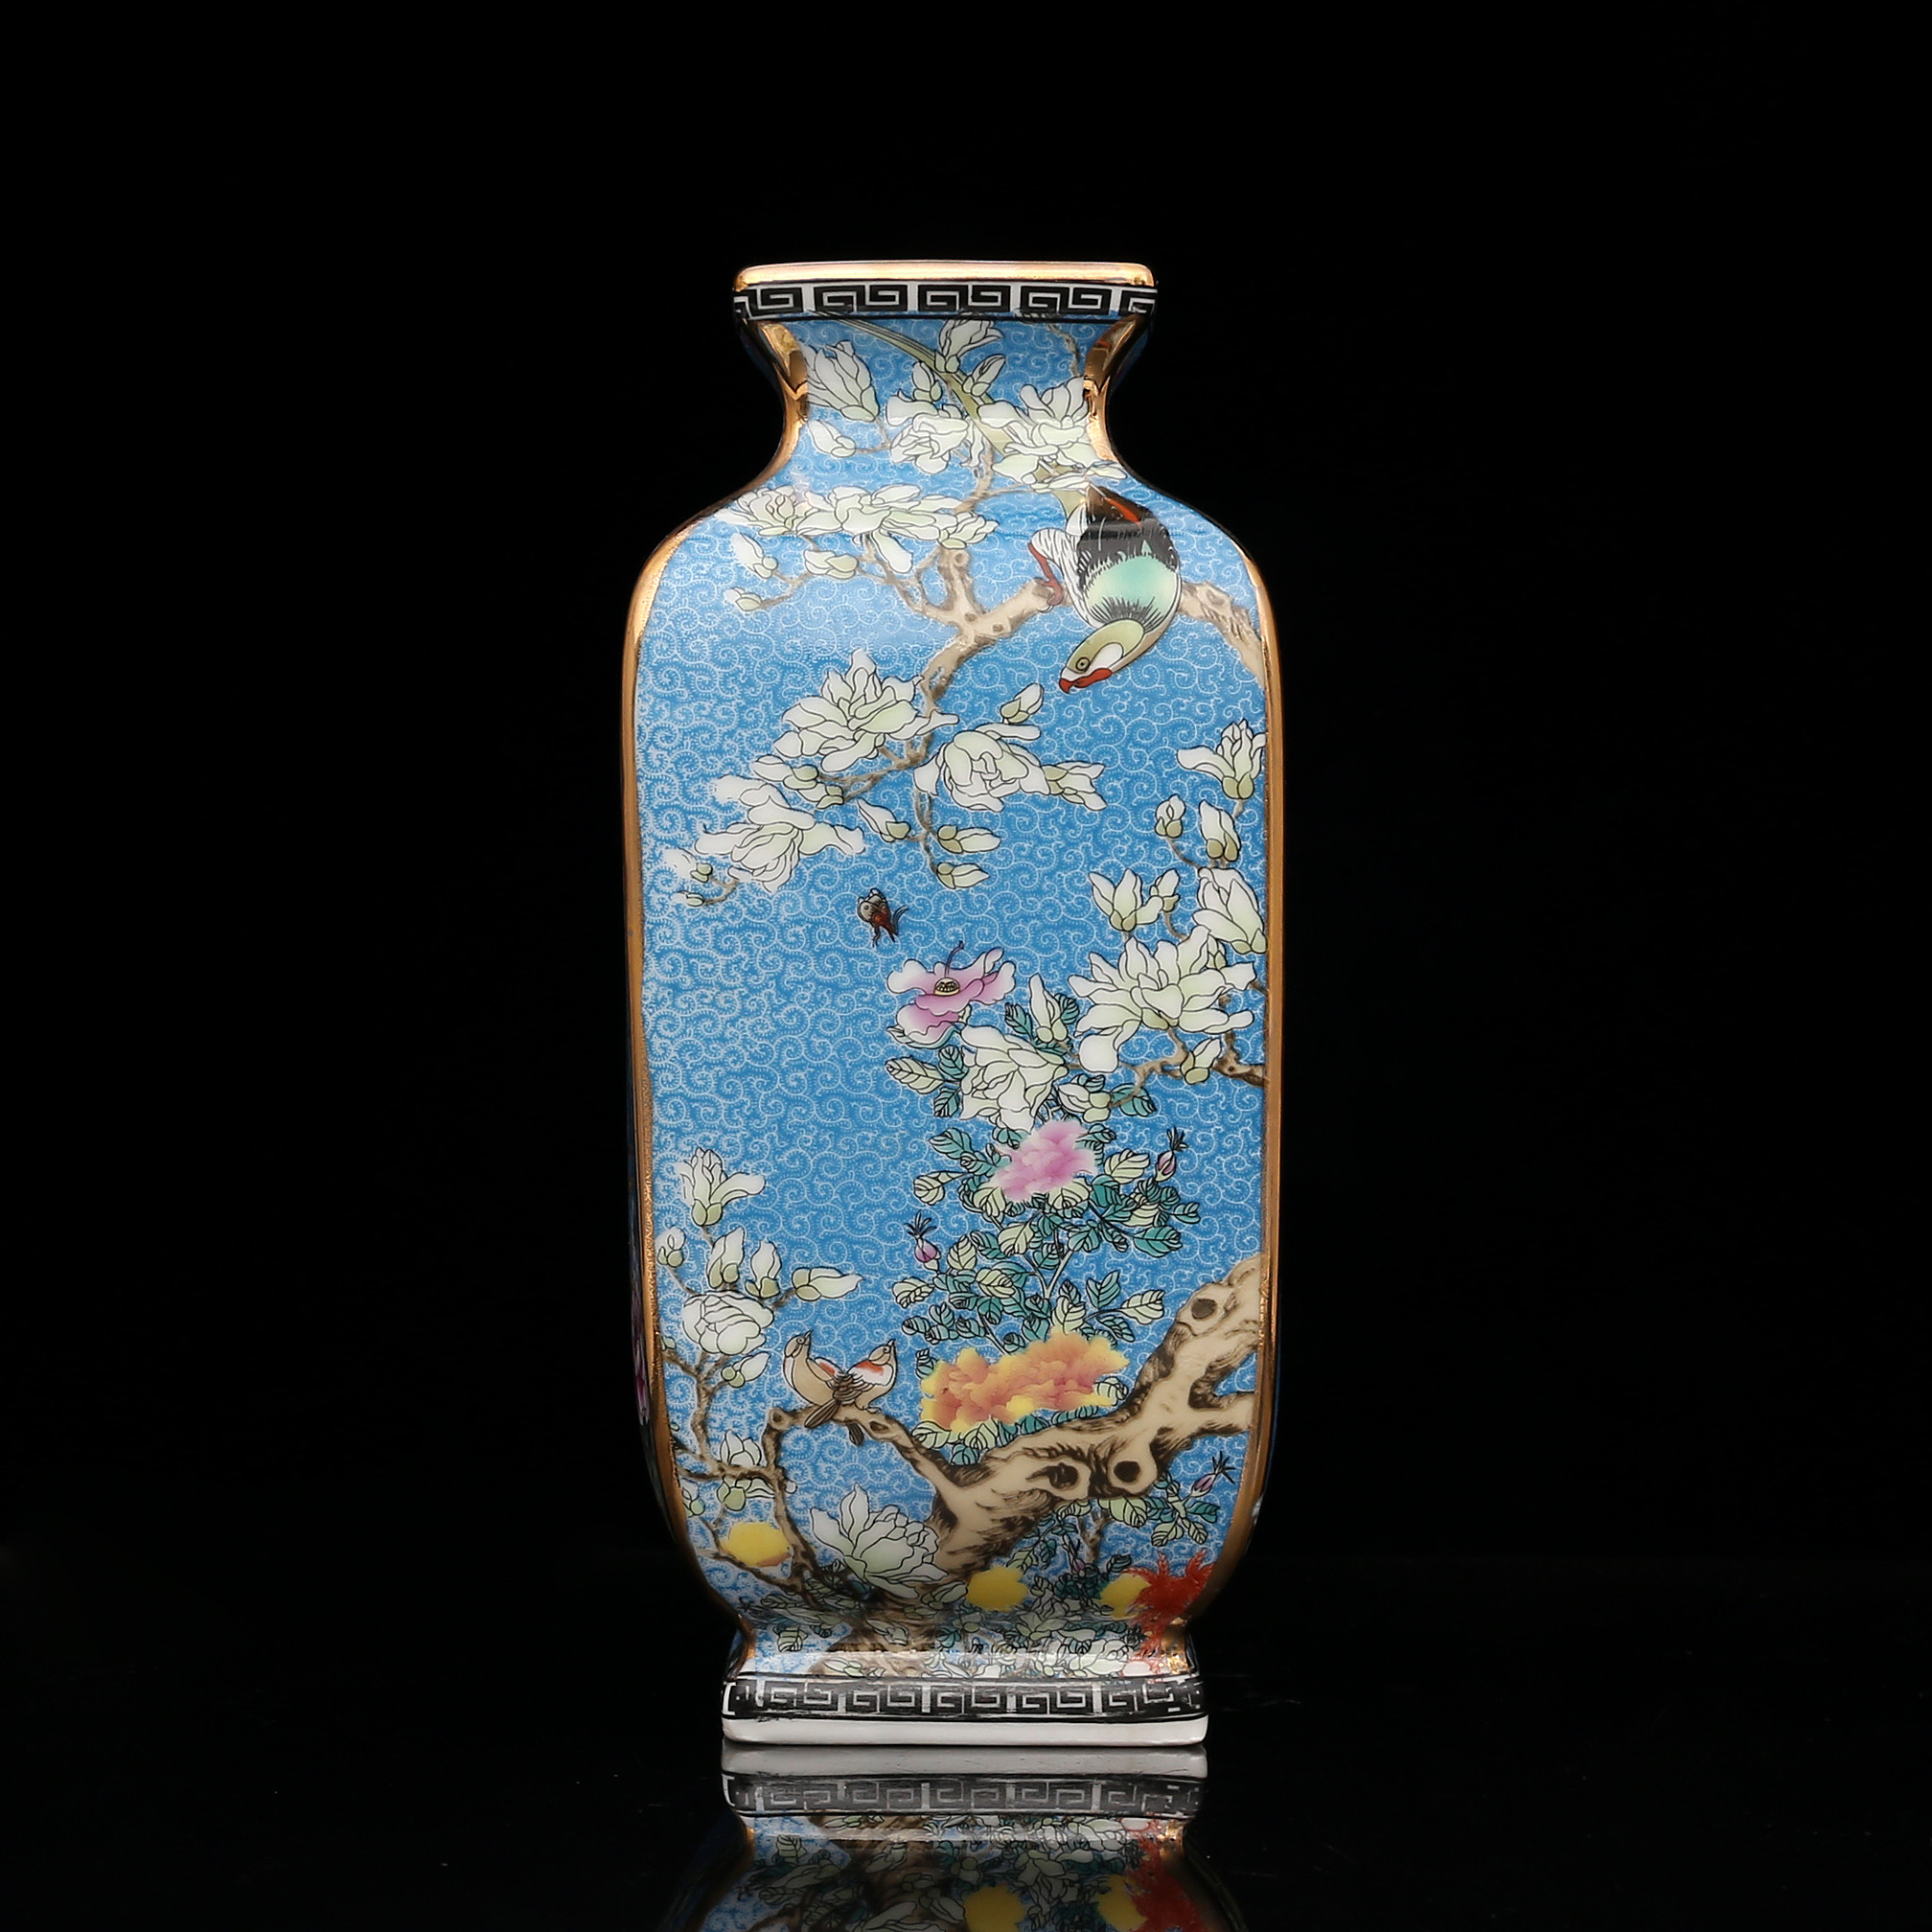 Porcelain Antique Unique Chinese Vase Handmade Cool Asian Art GDHP025